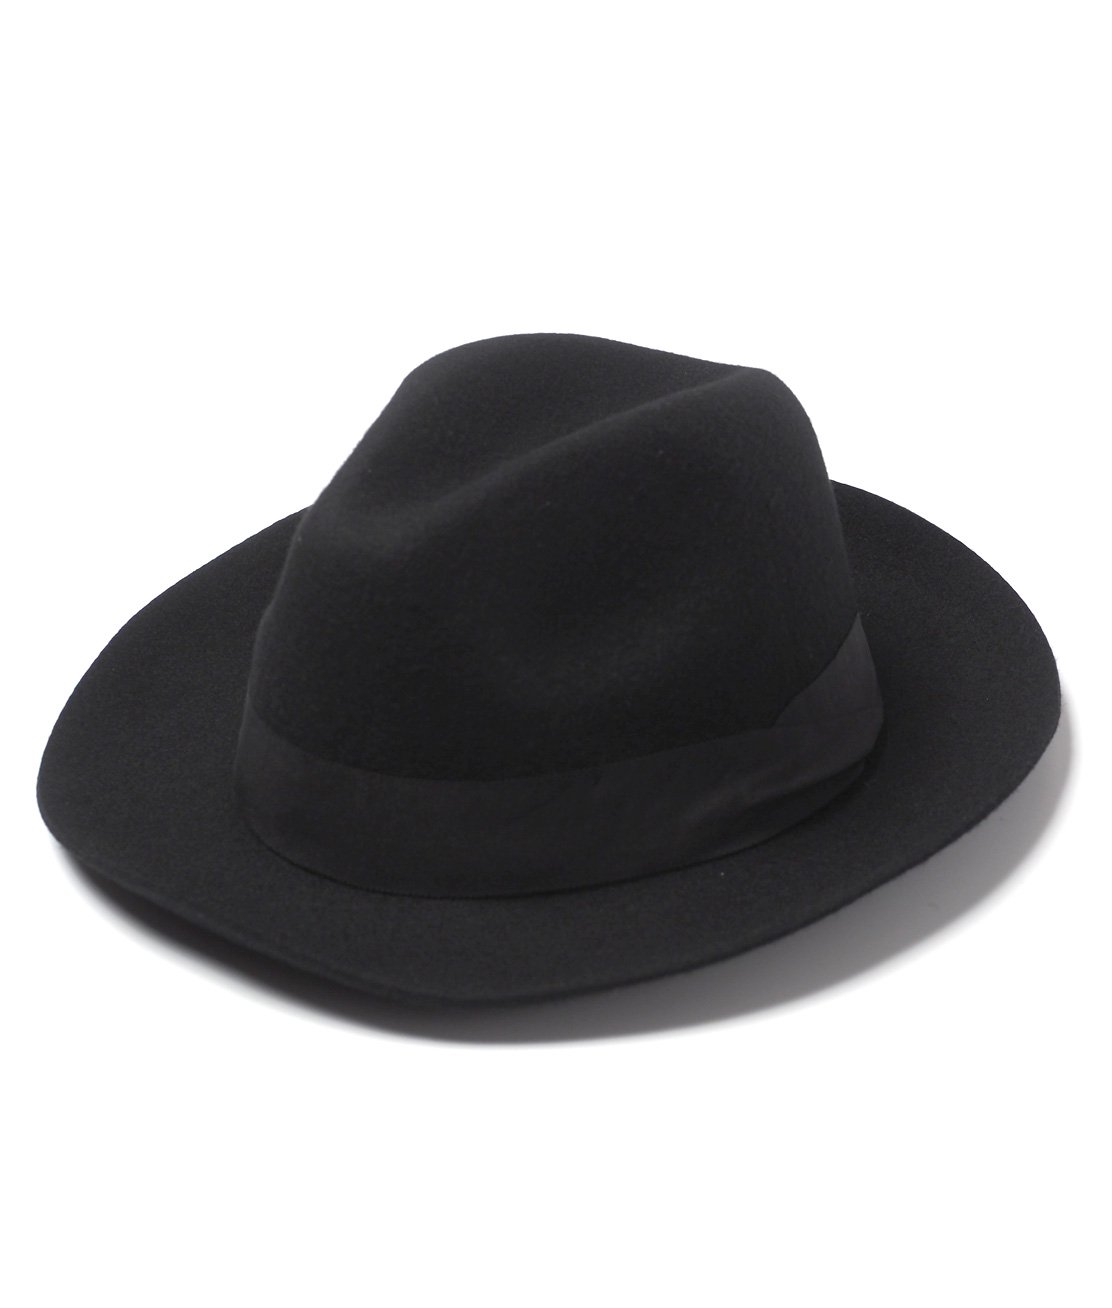 Ralph Lauren】BEDFORD FEDORA HAT BLACK フェドラ フェルトハット 中折れ帽 並行輸入品 HUNKY DORY